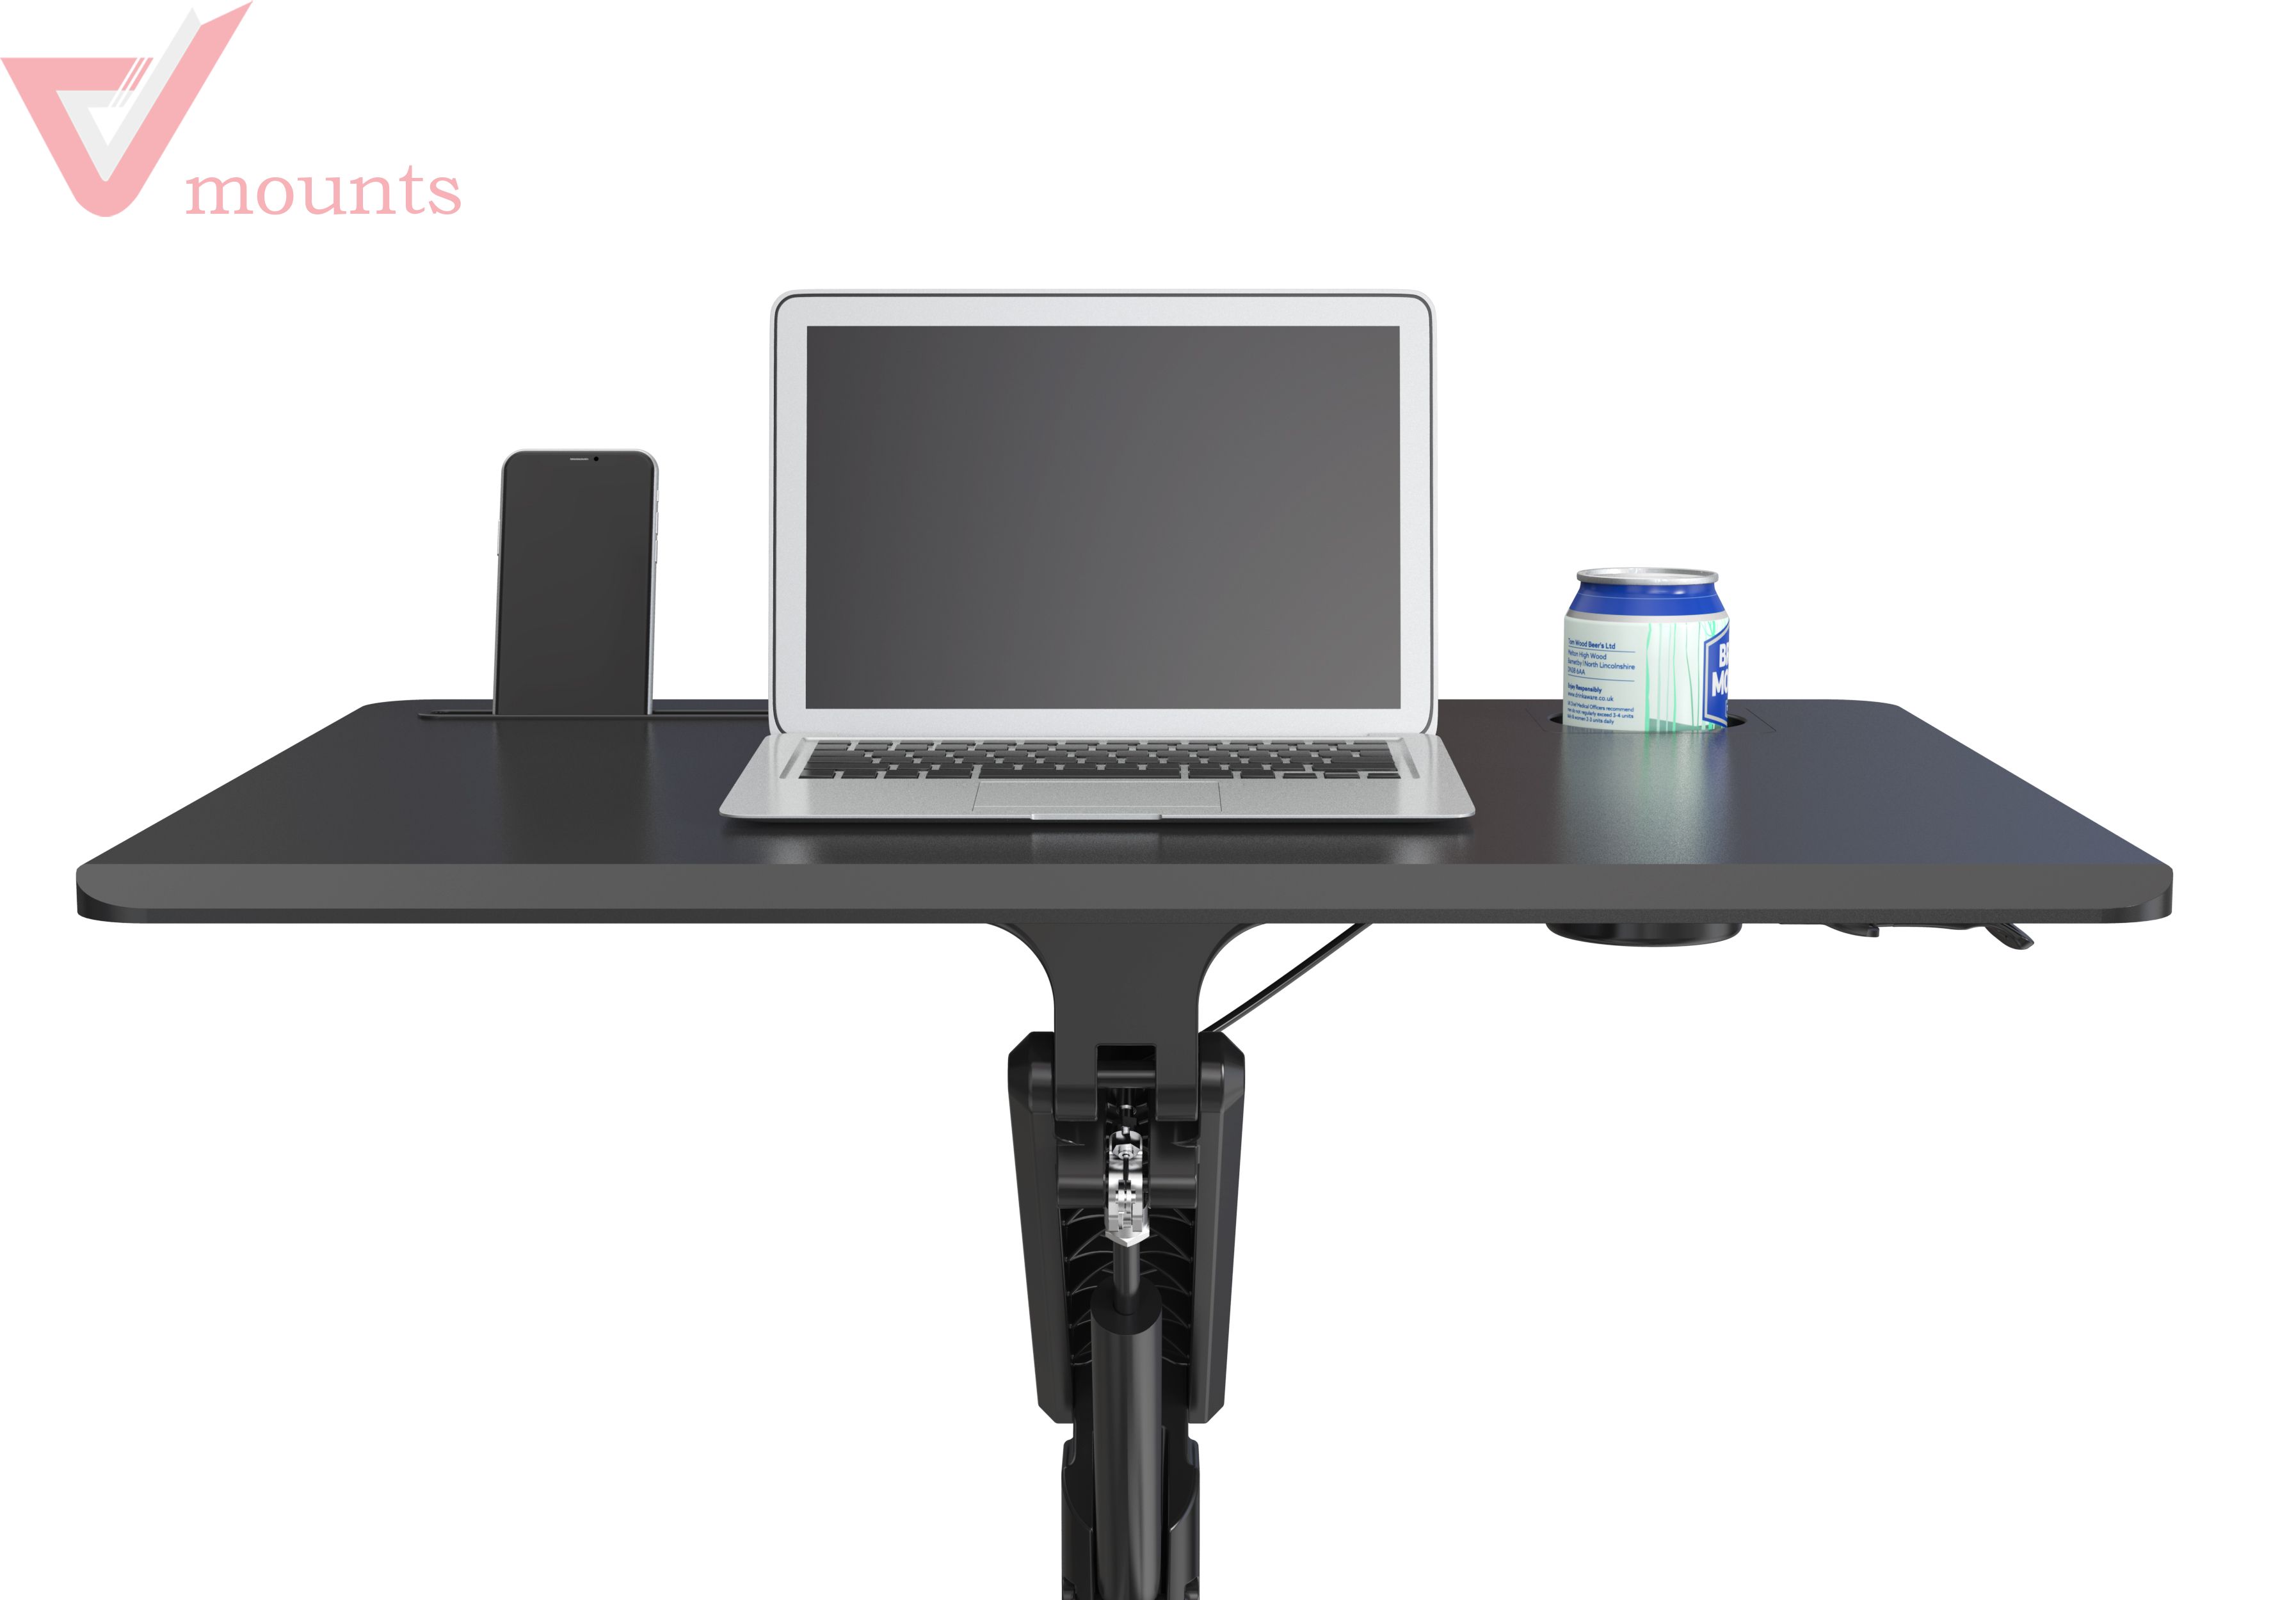 Mobile Manual Height Adjustable Office Desk VM-FDS101B